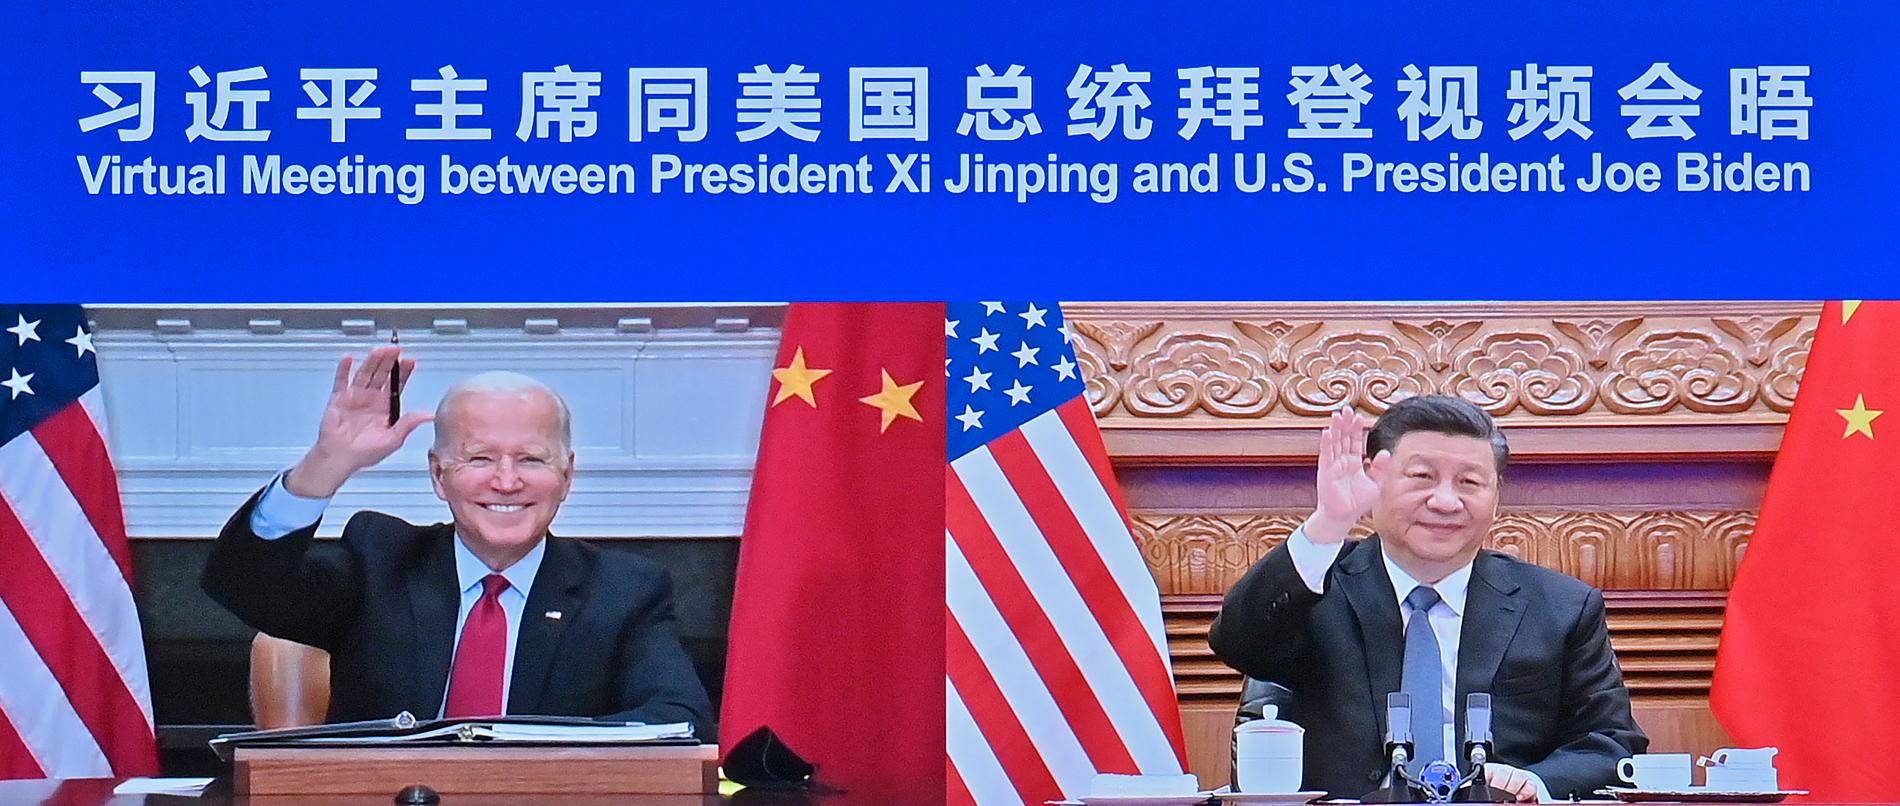 Den statliga kinesiska nyhetsbyrån Nya Kinas bild av nattens toppmöte mellan USA:s och Kinas presidenter.